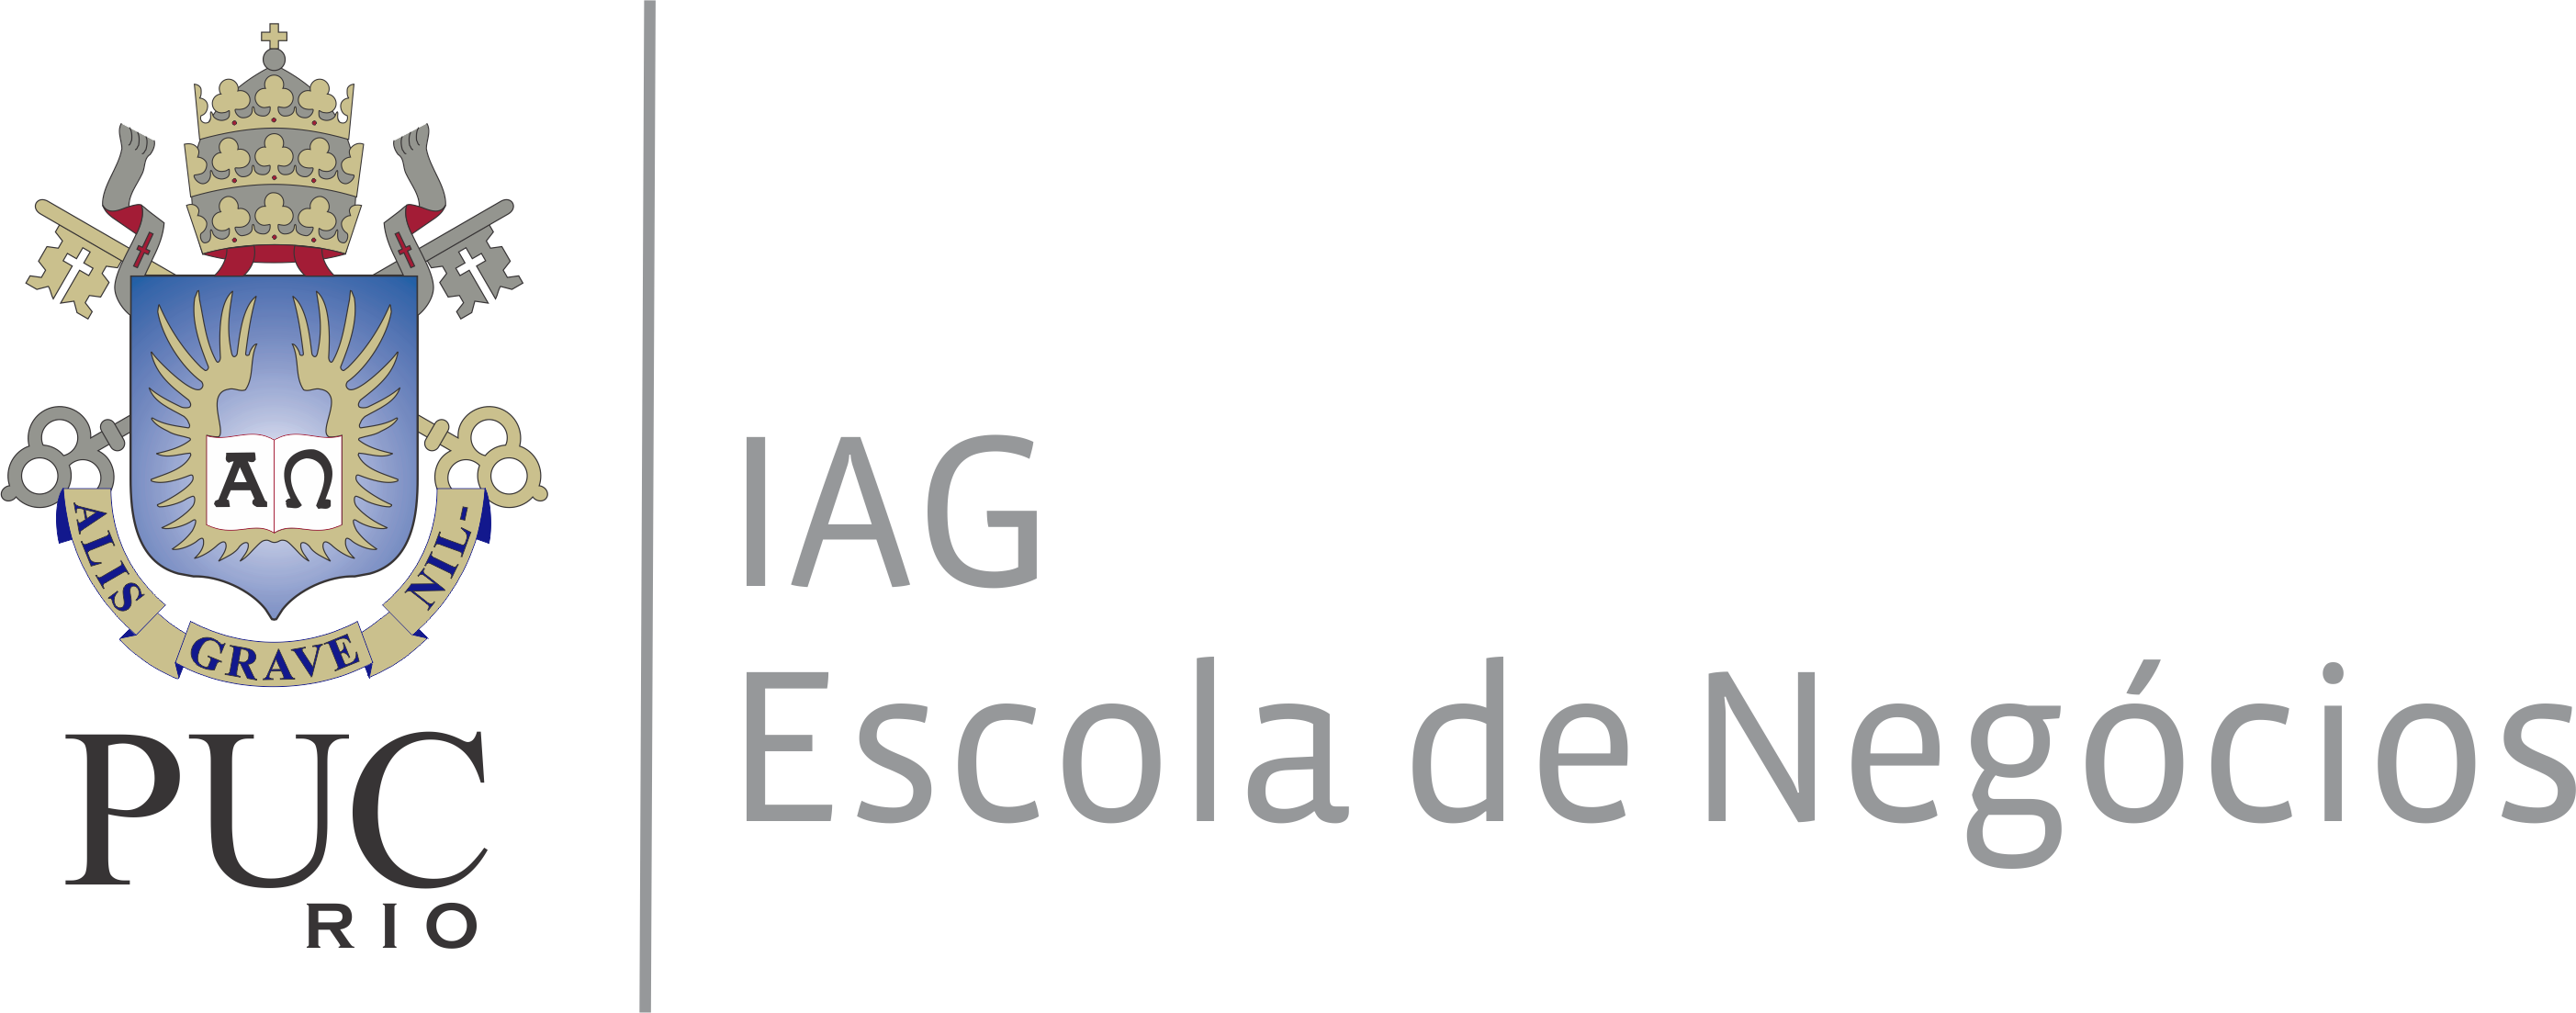 PUC-RIO Logo photo - 1